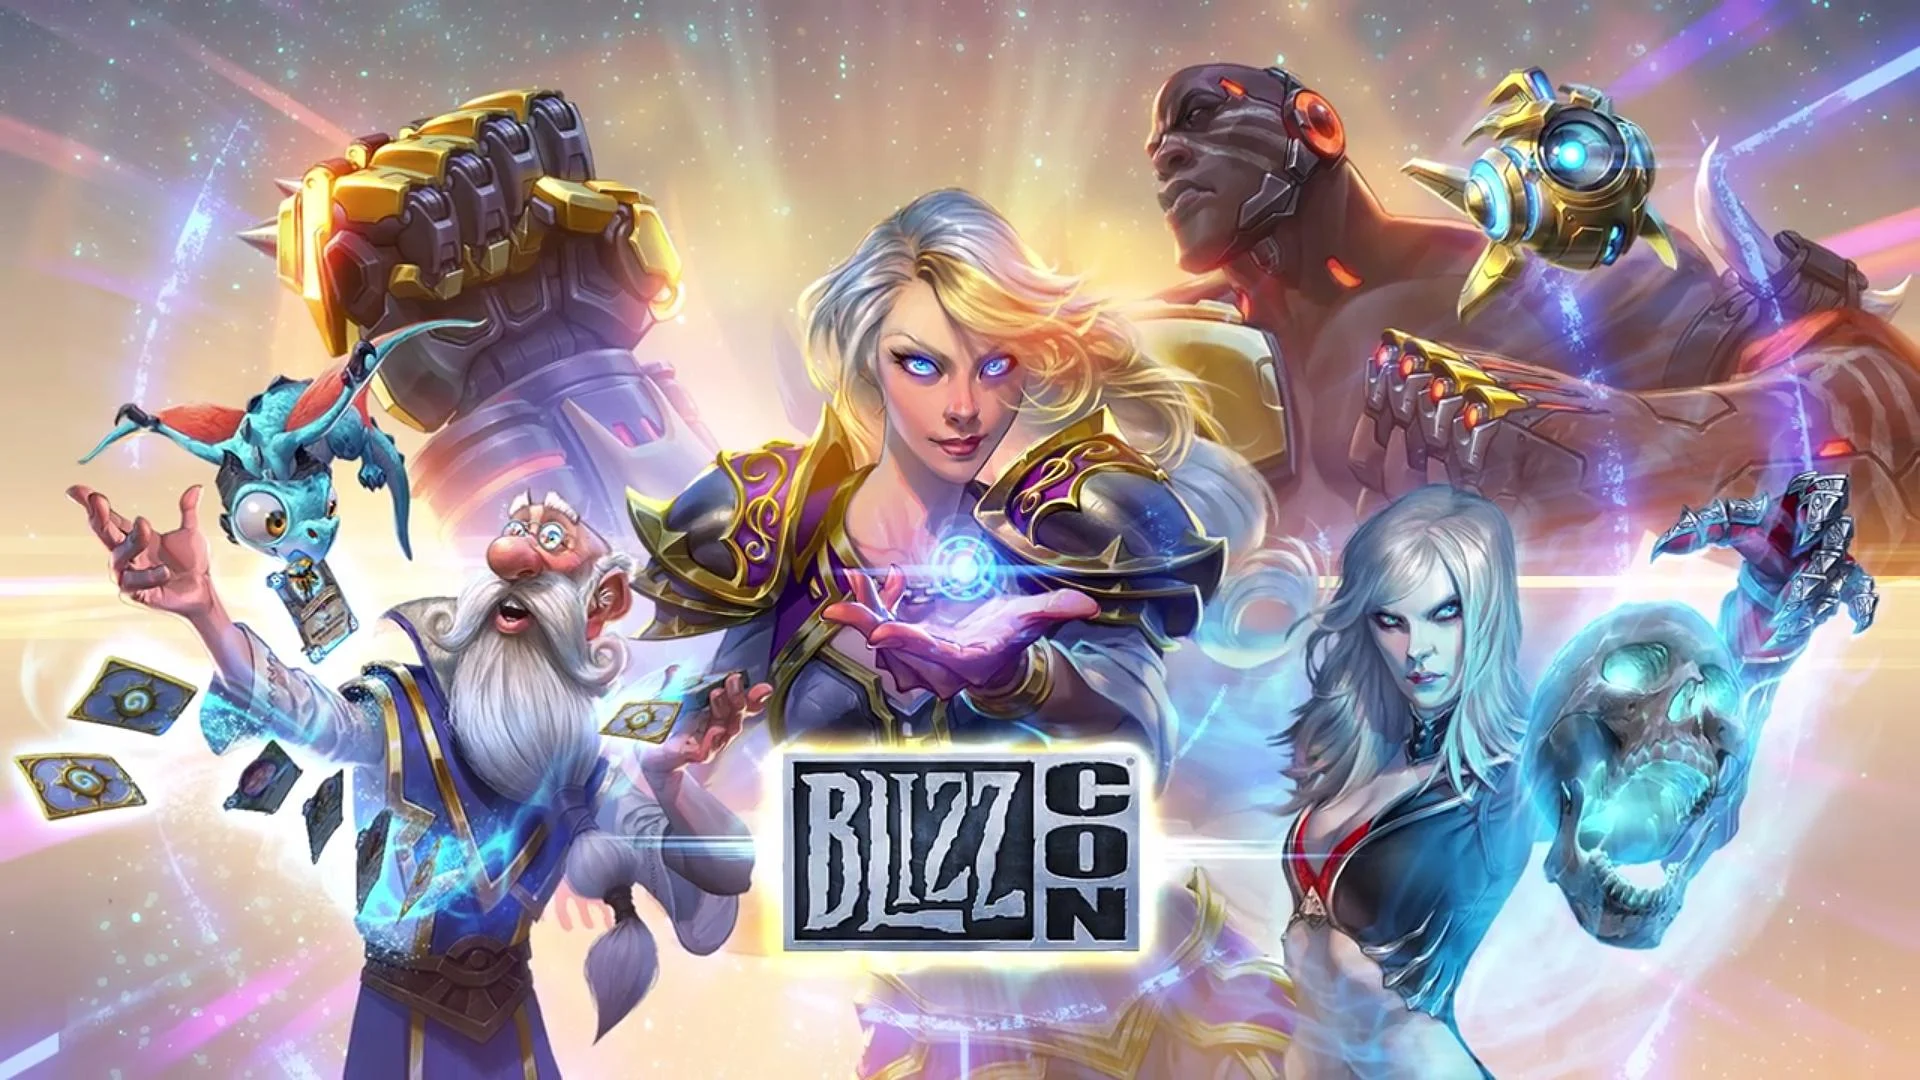 Blizzard снова собирает всех своих фанатов на BlizzCon — масштабное событие, на котором разработчики культовых серий делятся своими планами на будущее и рассказывают о грядущих обновлениях своих игр. Прошлая выставка, посвященная 25-летию компании, не принесла никаких особых новостей — так, может быть, здесь будет что-то интересное?